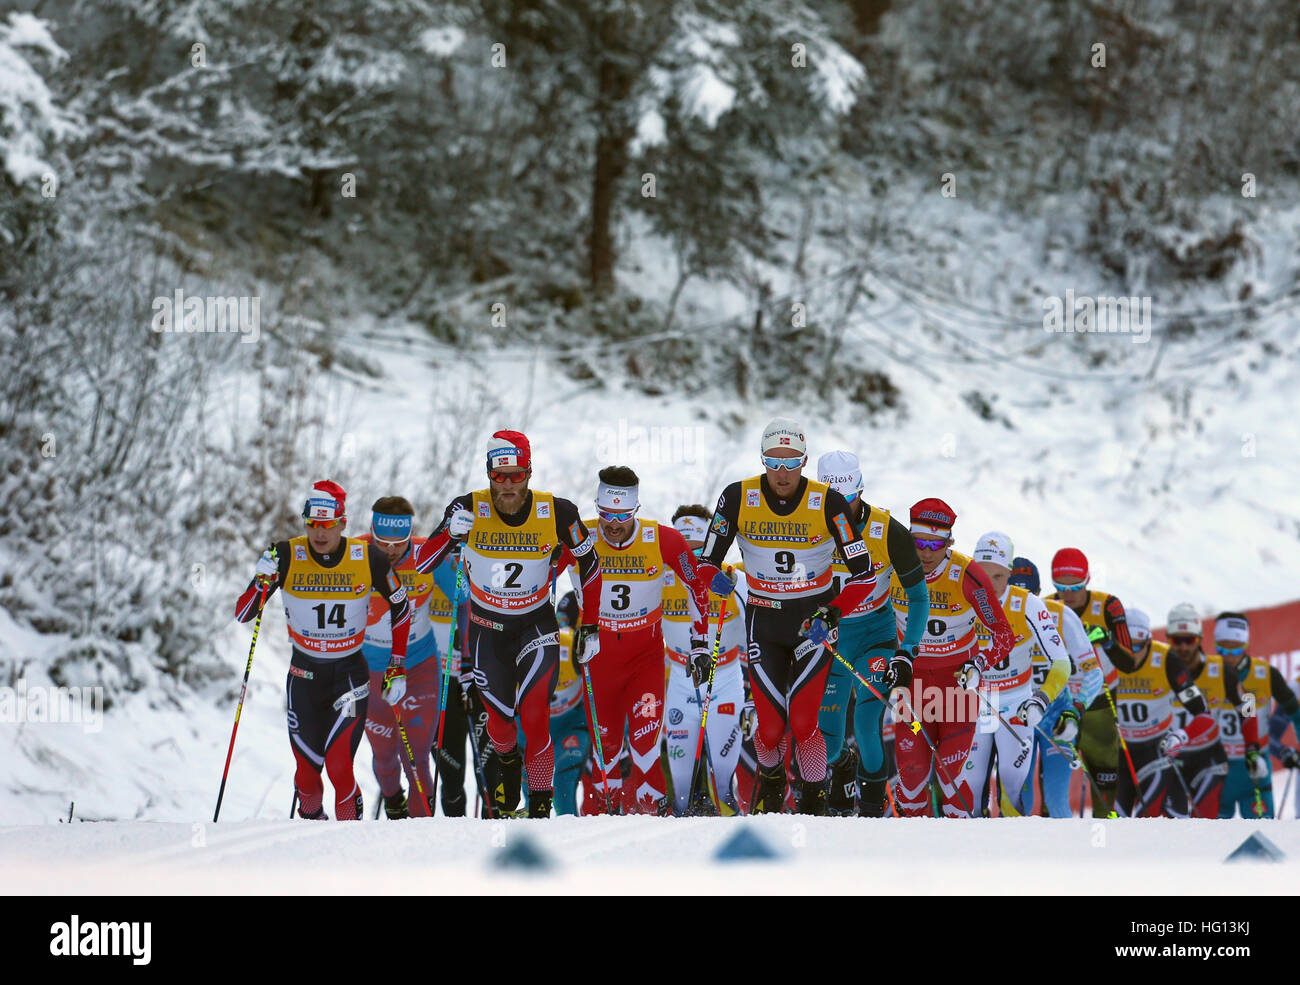 Oberstdorf, Germania. 03 gen 2017. Cross-country sciatori in azione durante la FSI Tour de Ski la concorrenza a Oberstdorf in Germania, 03 gennaio 2017. La competizione si svolge dal 03 al 04 gennaio 2017. Foto: Karl-Josef Hildenbrand/dpa/Alamy Live News Foto Stock